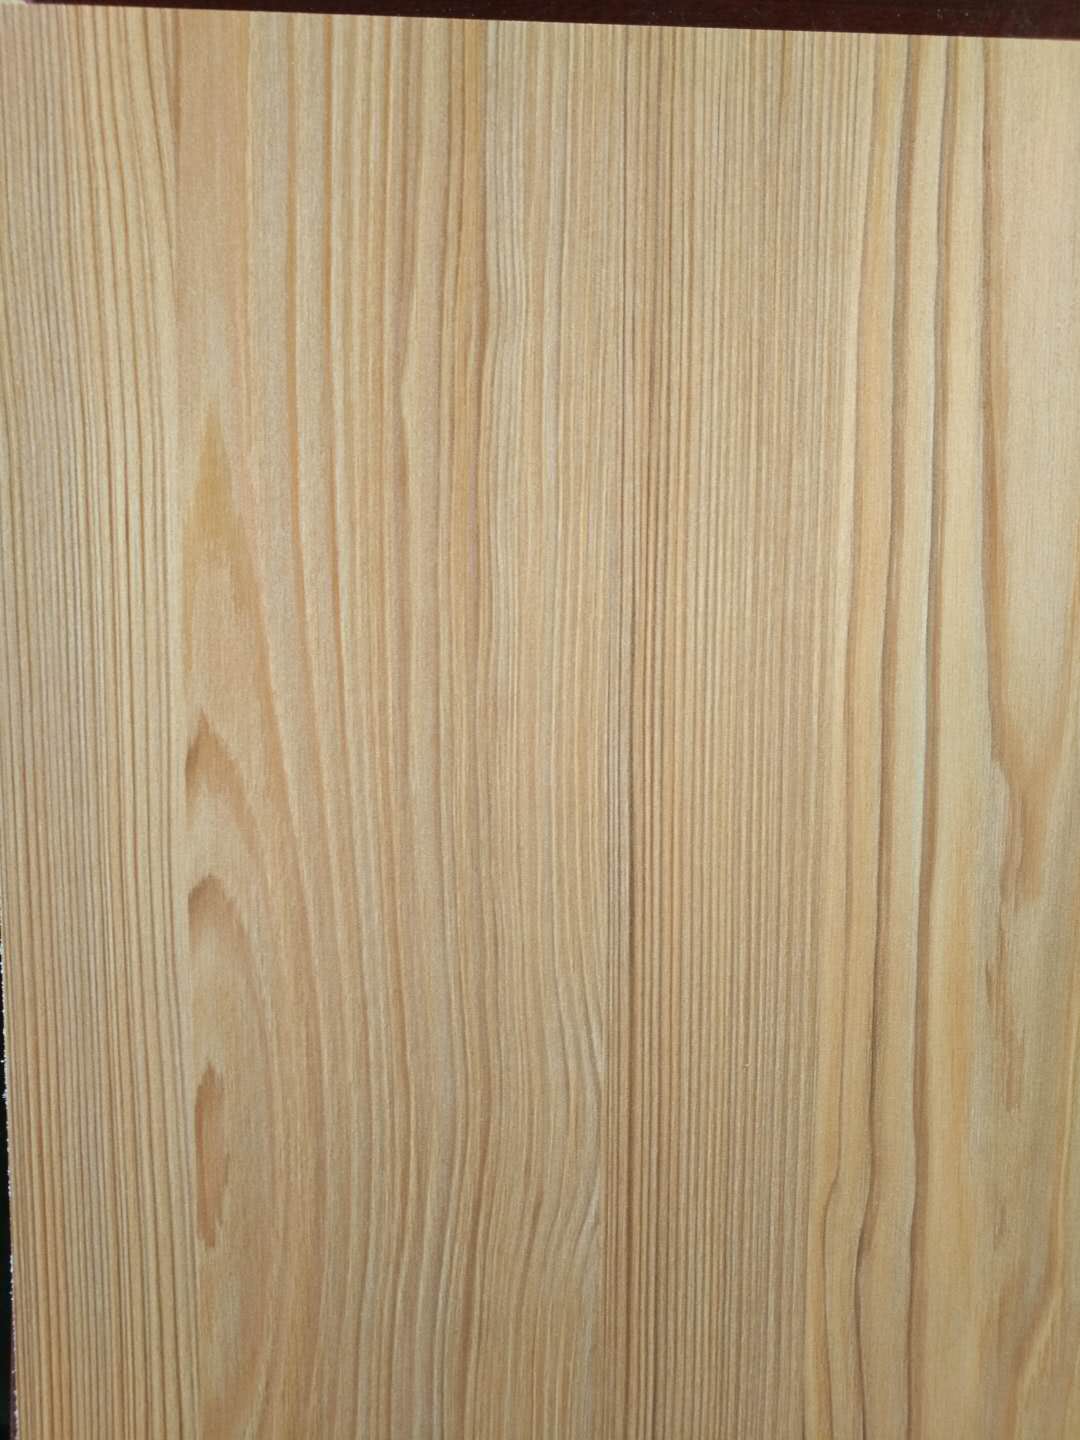 木材属于建材吗